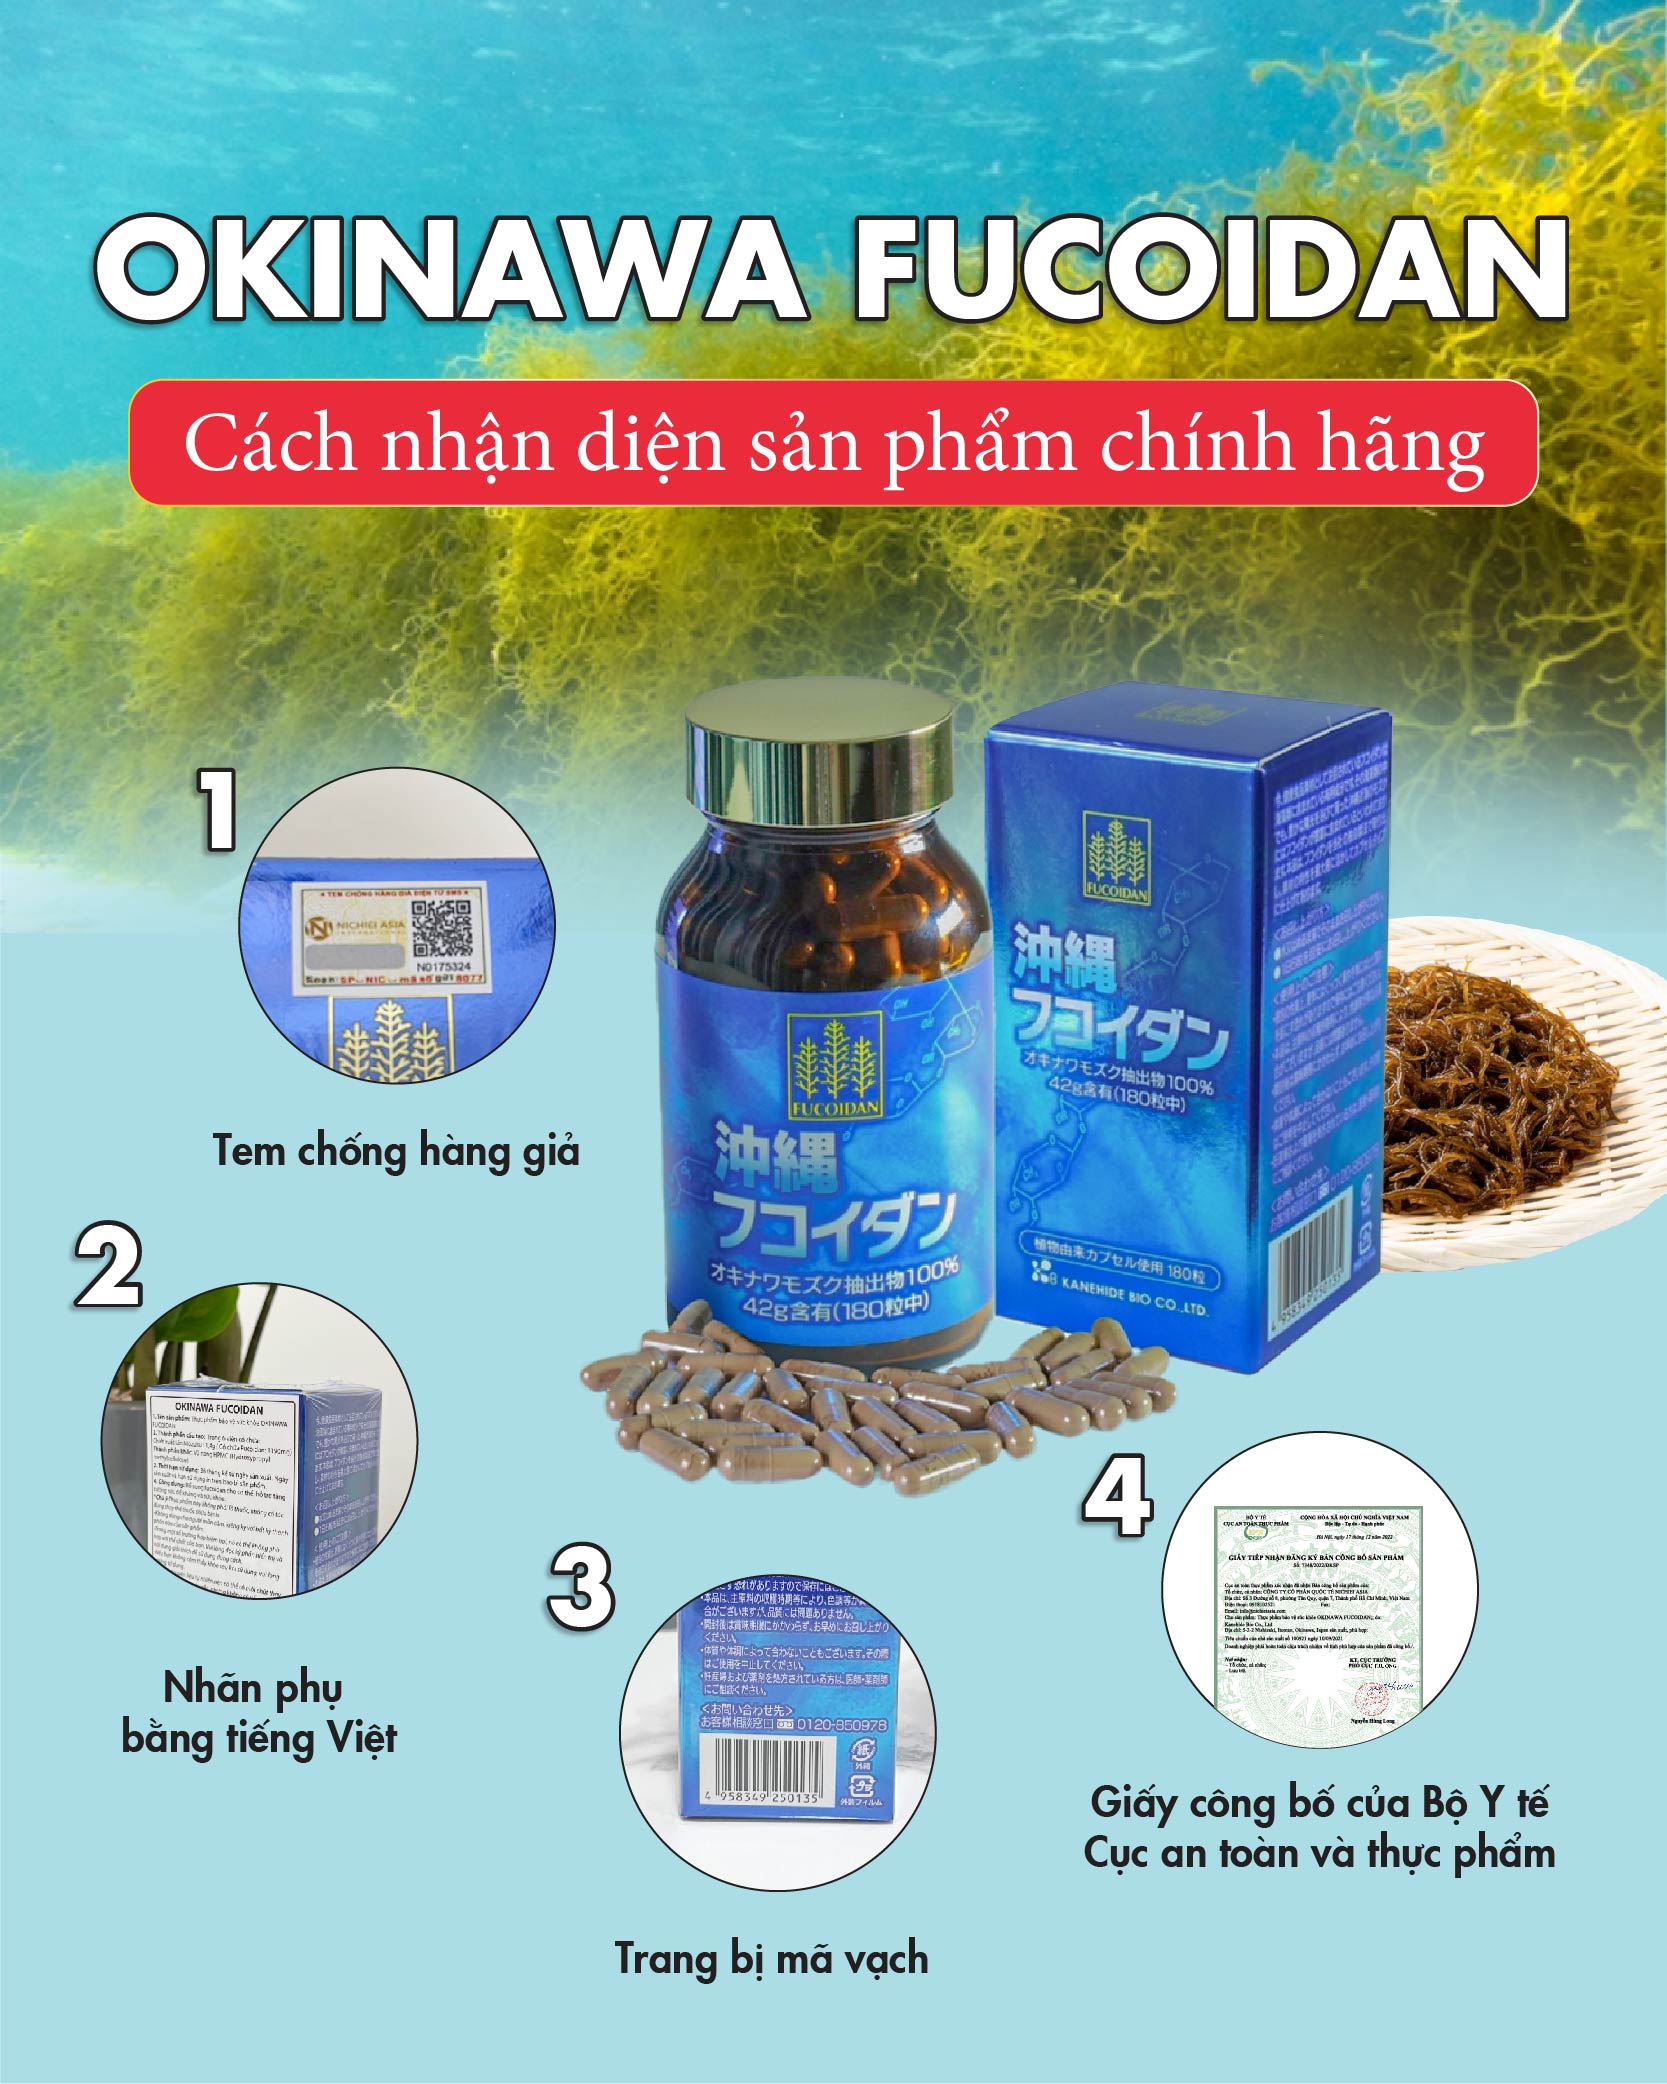 Bạn có chắc sản phẩm Fucoidan Okinawa đang dùng là sản phẩm chính hãng?